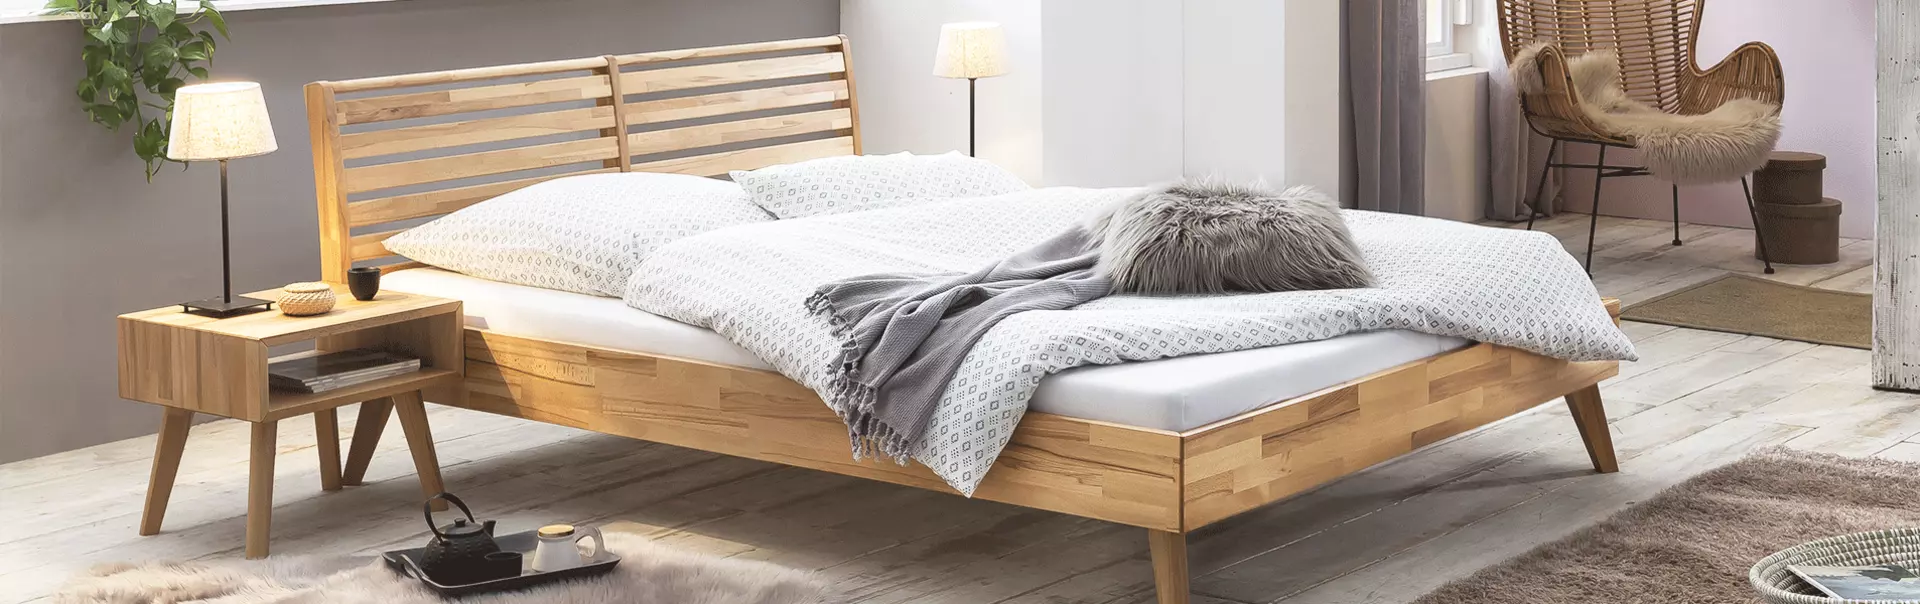 Bett und Nachttisch aus Massivholz. Dazu ein Fellteppich und weiße Bettwäsche.